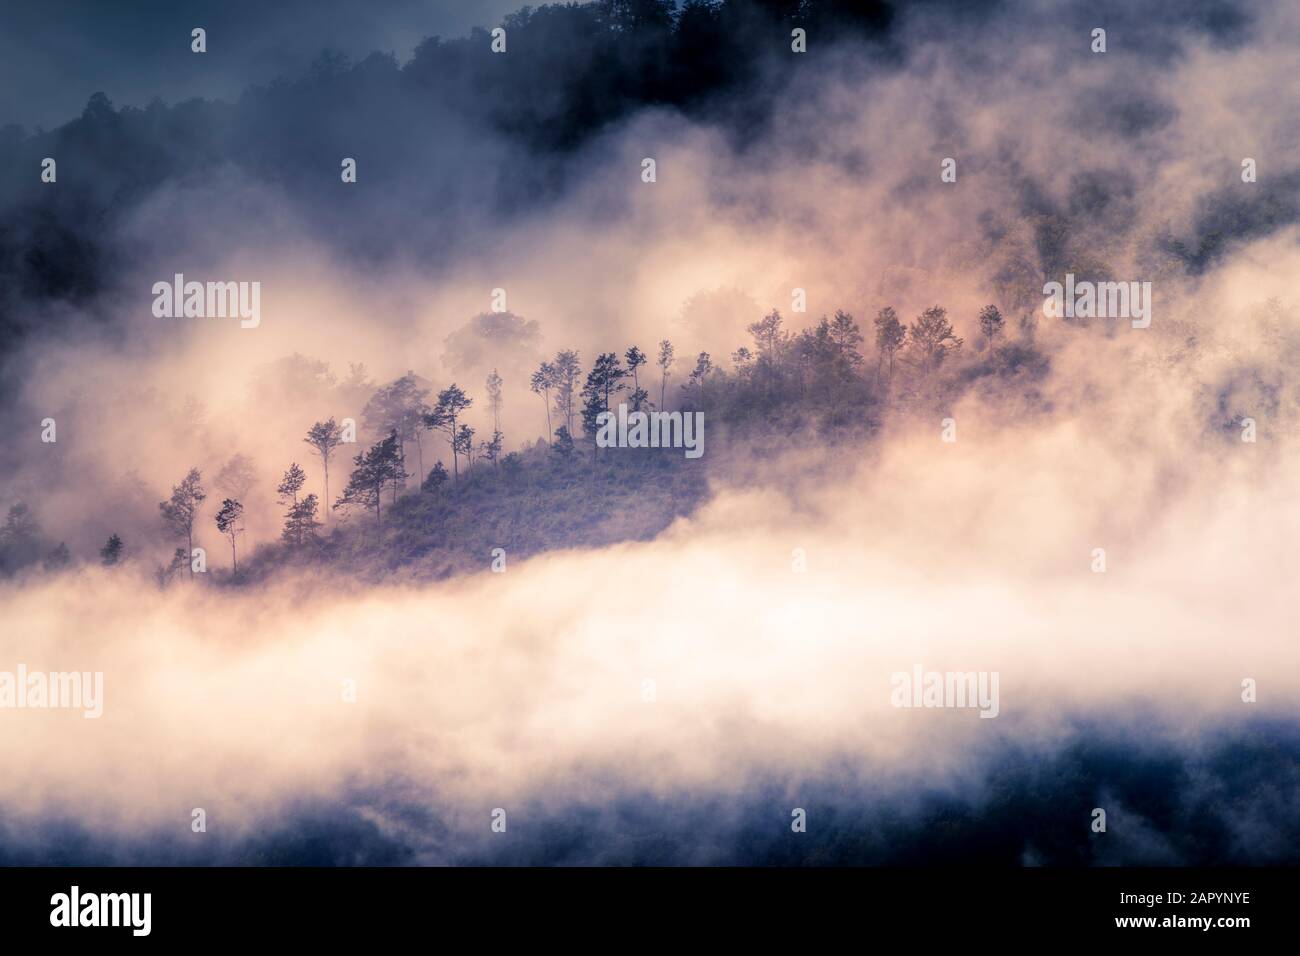 Trees in mist Tuscany Italy Stock Photo